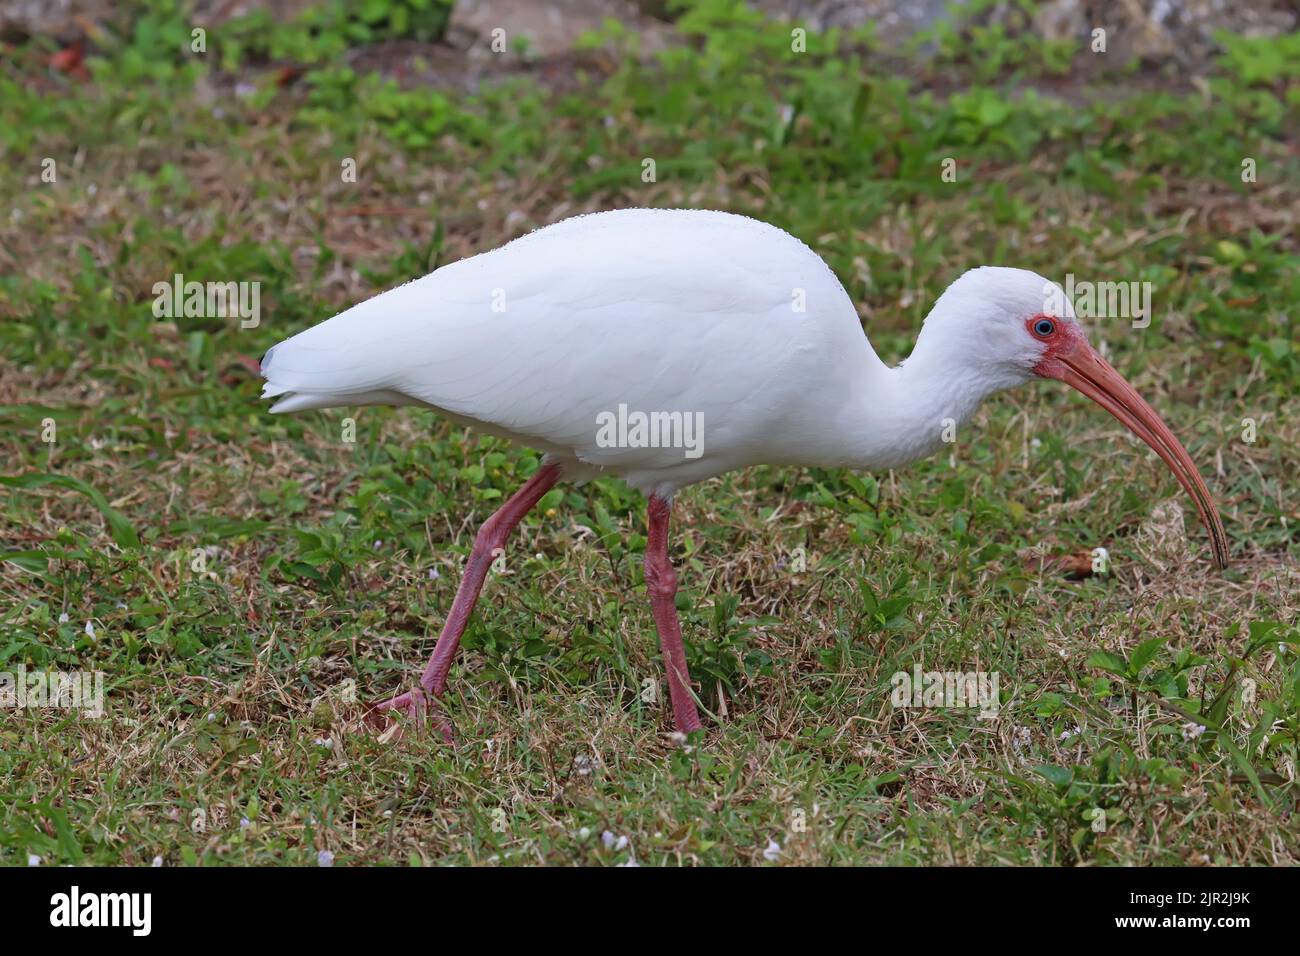 White ibis (Eudocimus albus) walks on grass in Robinson Preserve in northwest Bradenton, Florida Stock Photo